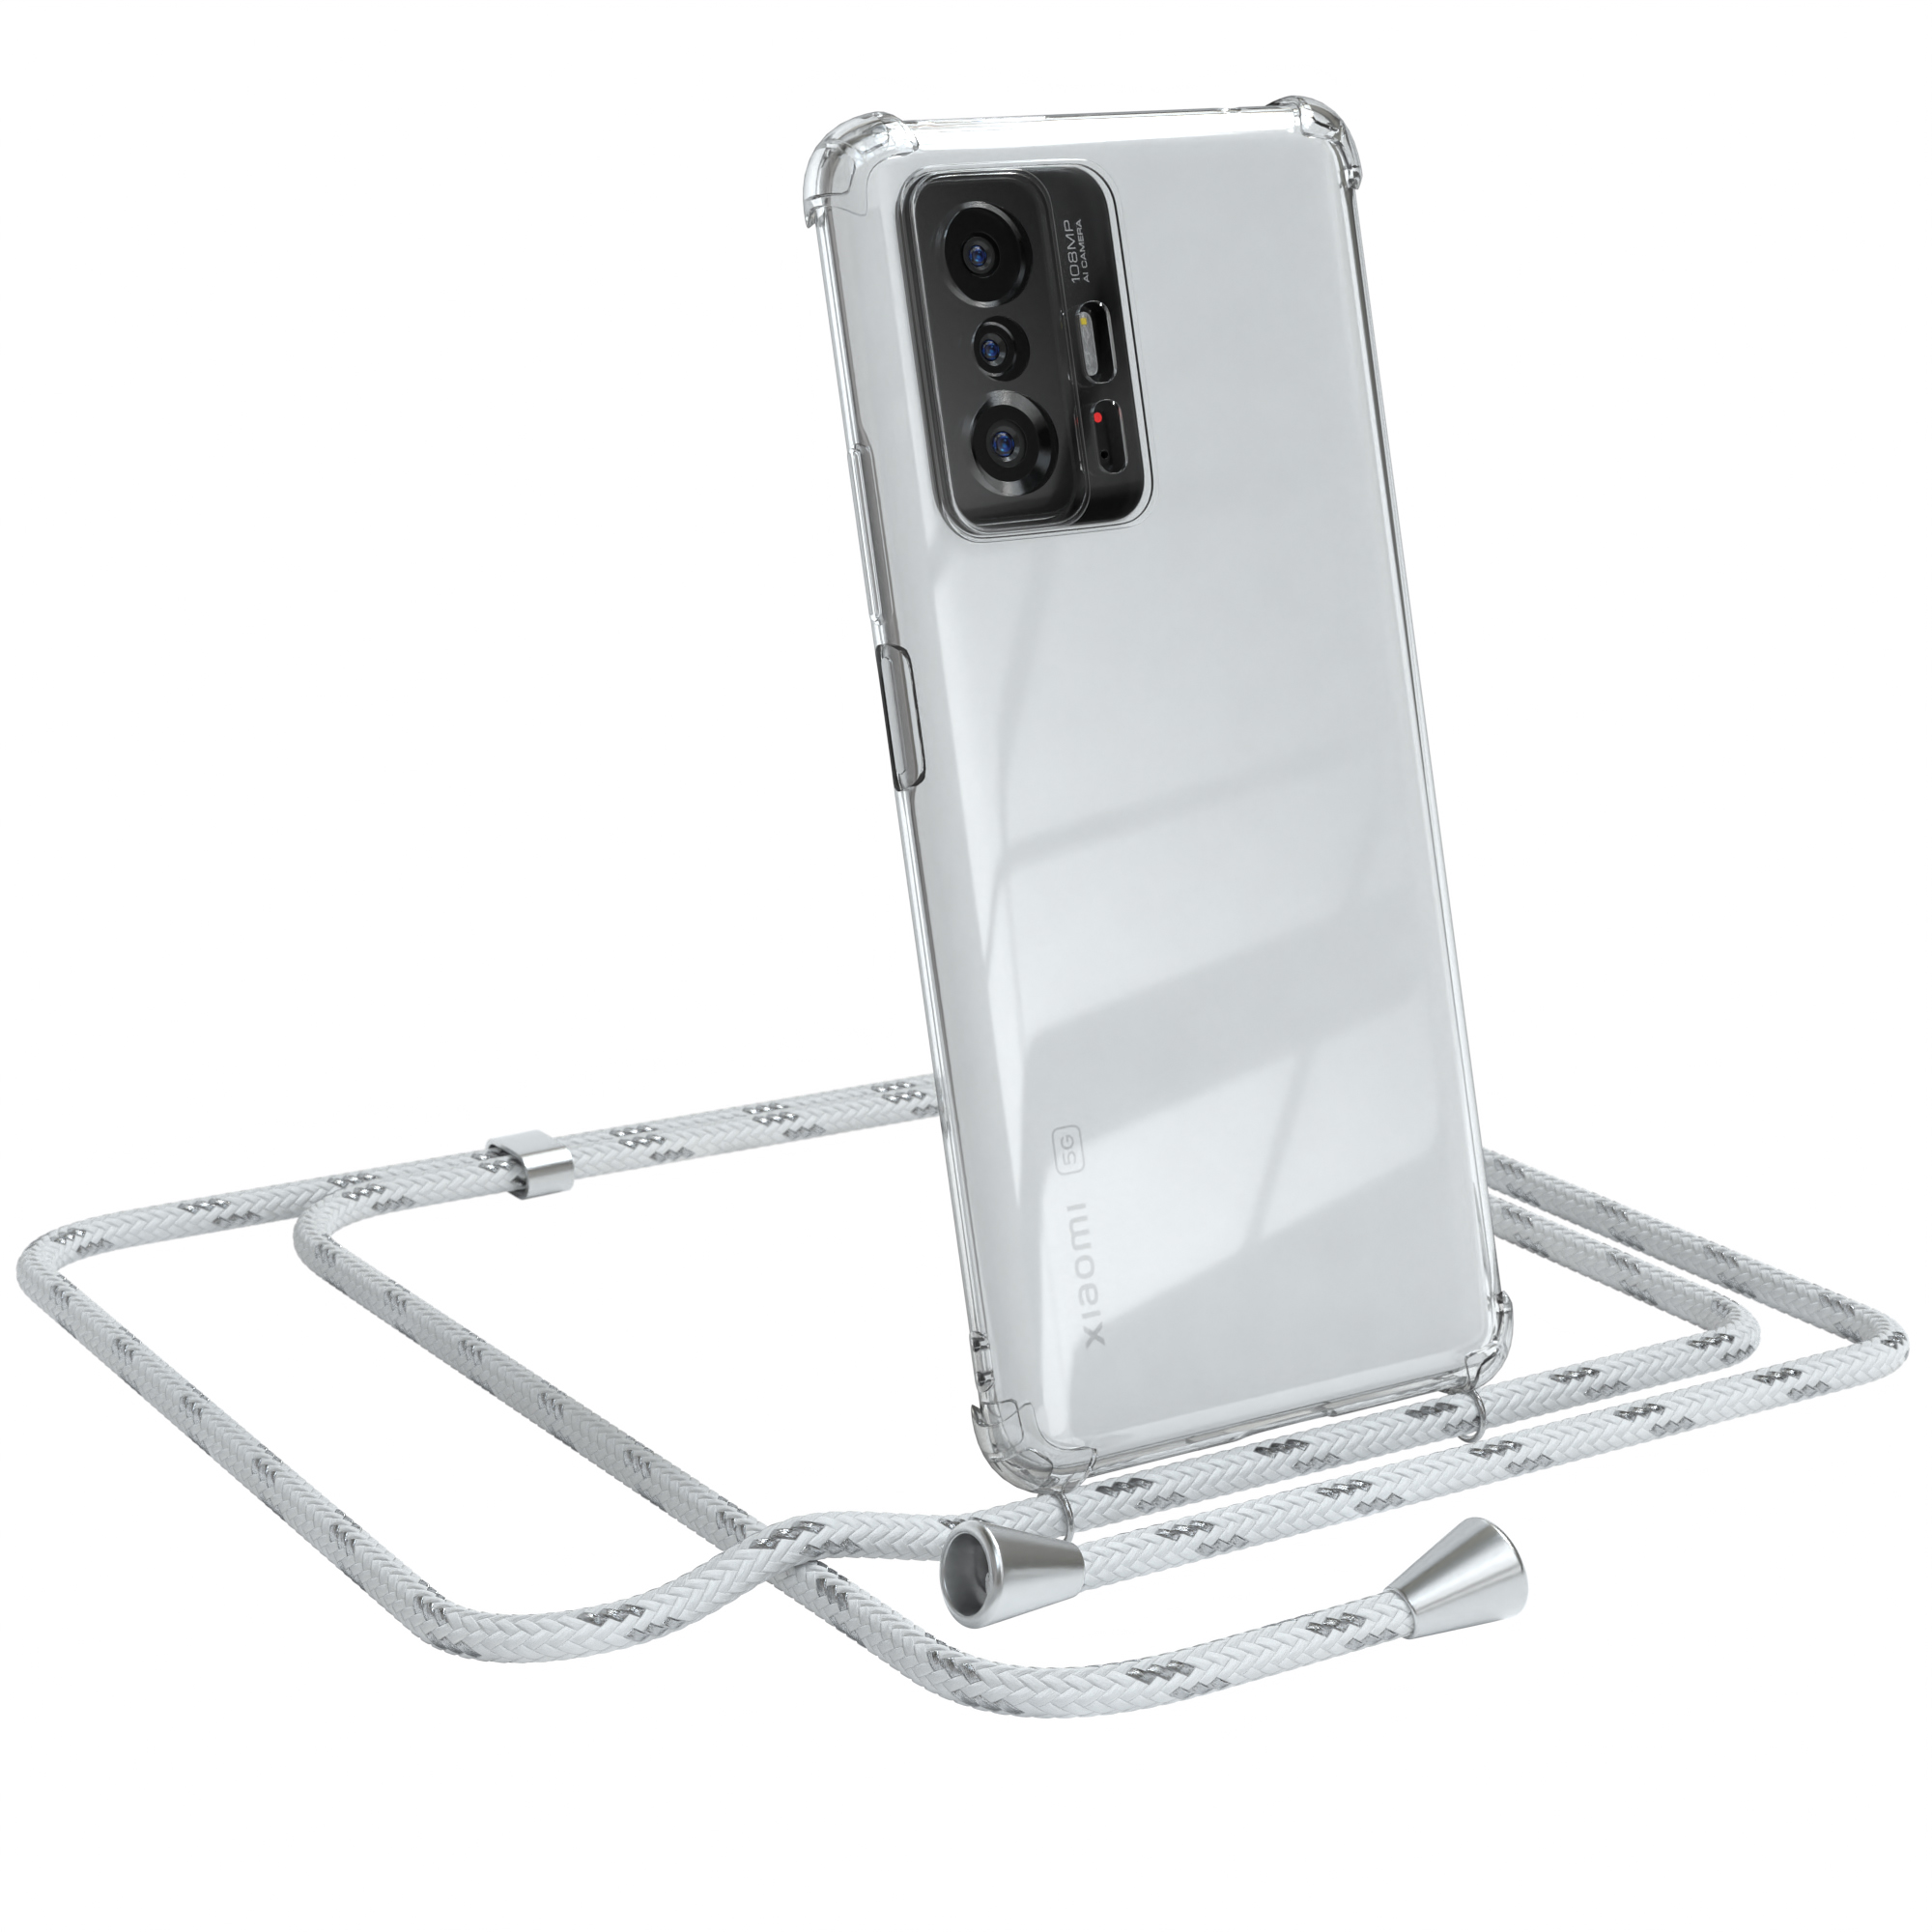 Silber Umhängetasche, 11T Pro Clips Cover 5G, CASE mit 11T Xiaomi, Umhängeband, / EAZY Clear Weiß /